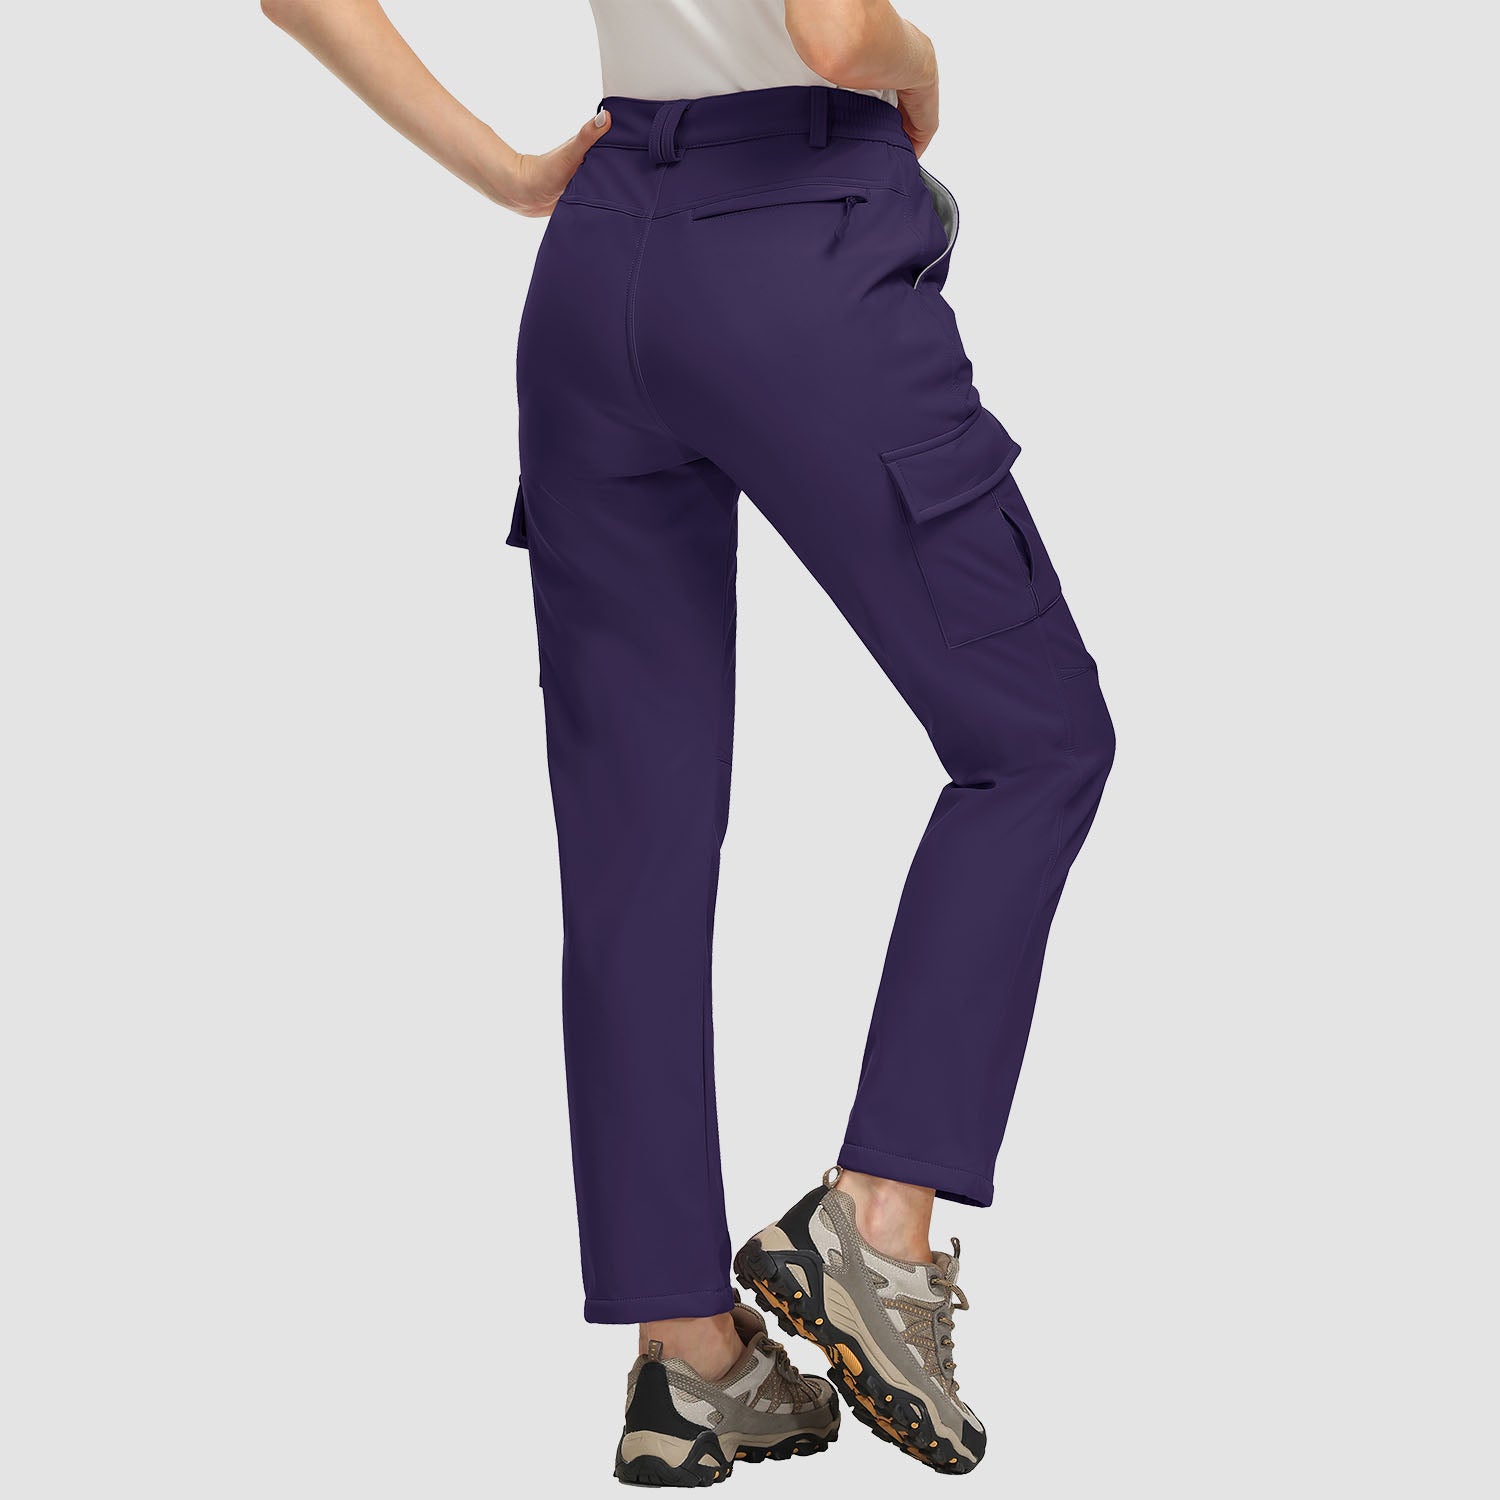 Stormpack Ladies' Wind Pants Micro Fleece Lined Pant J51 | eBay